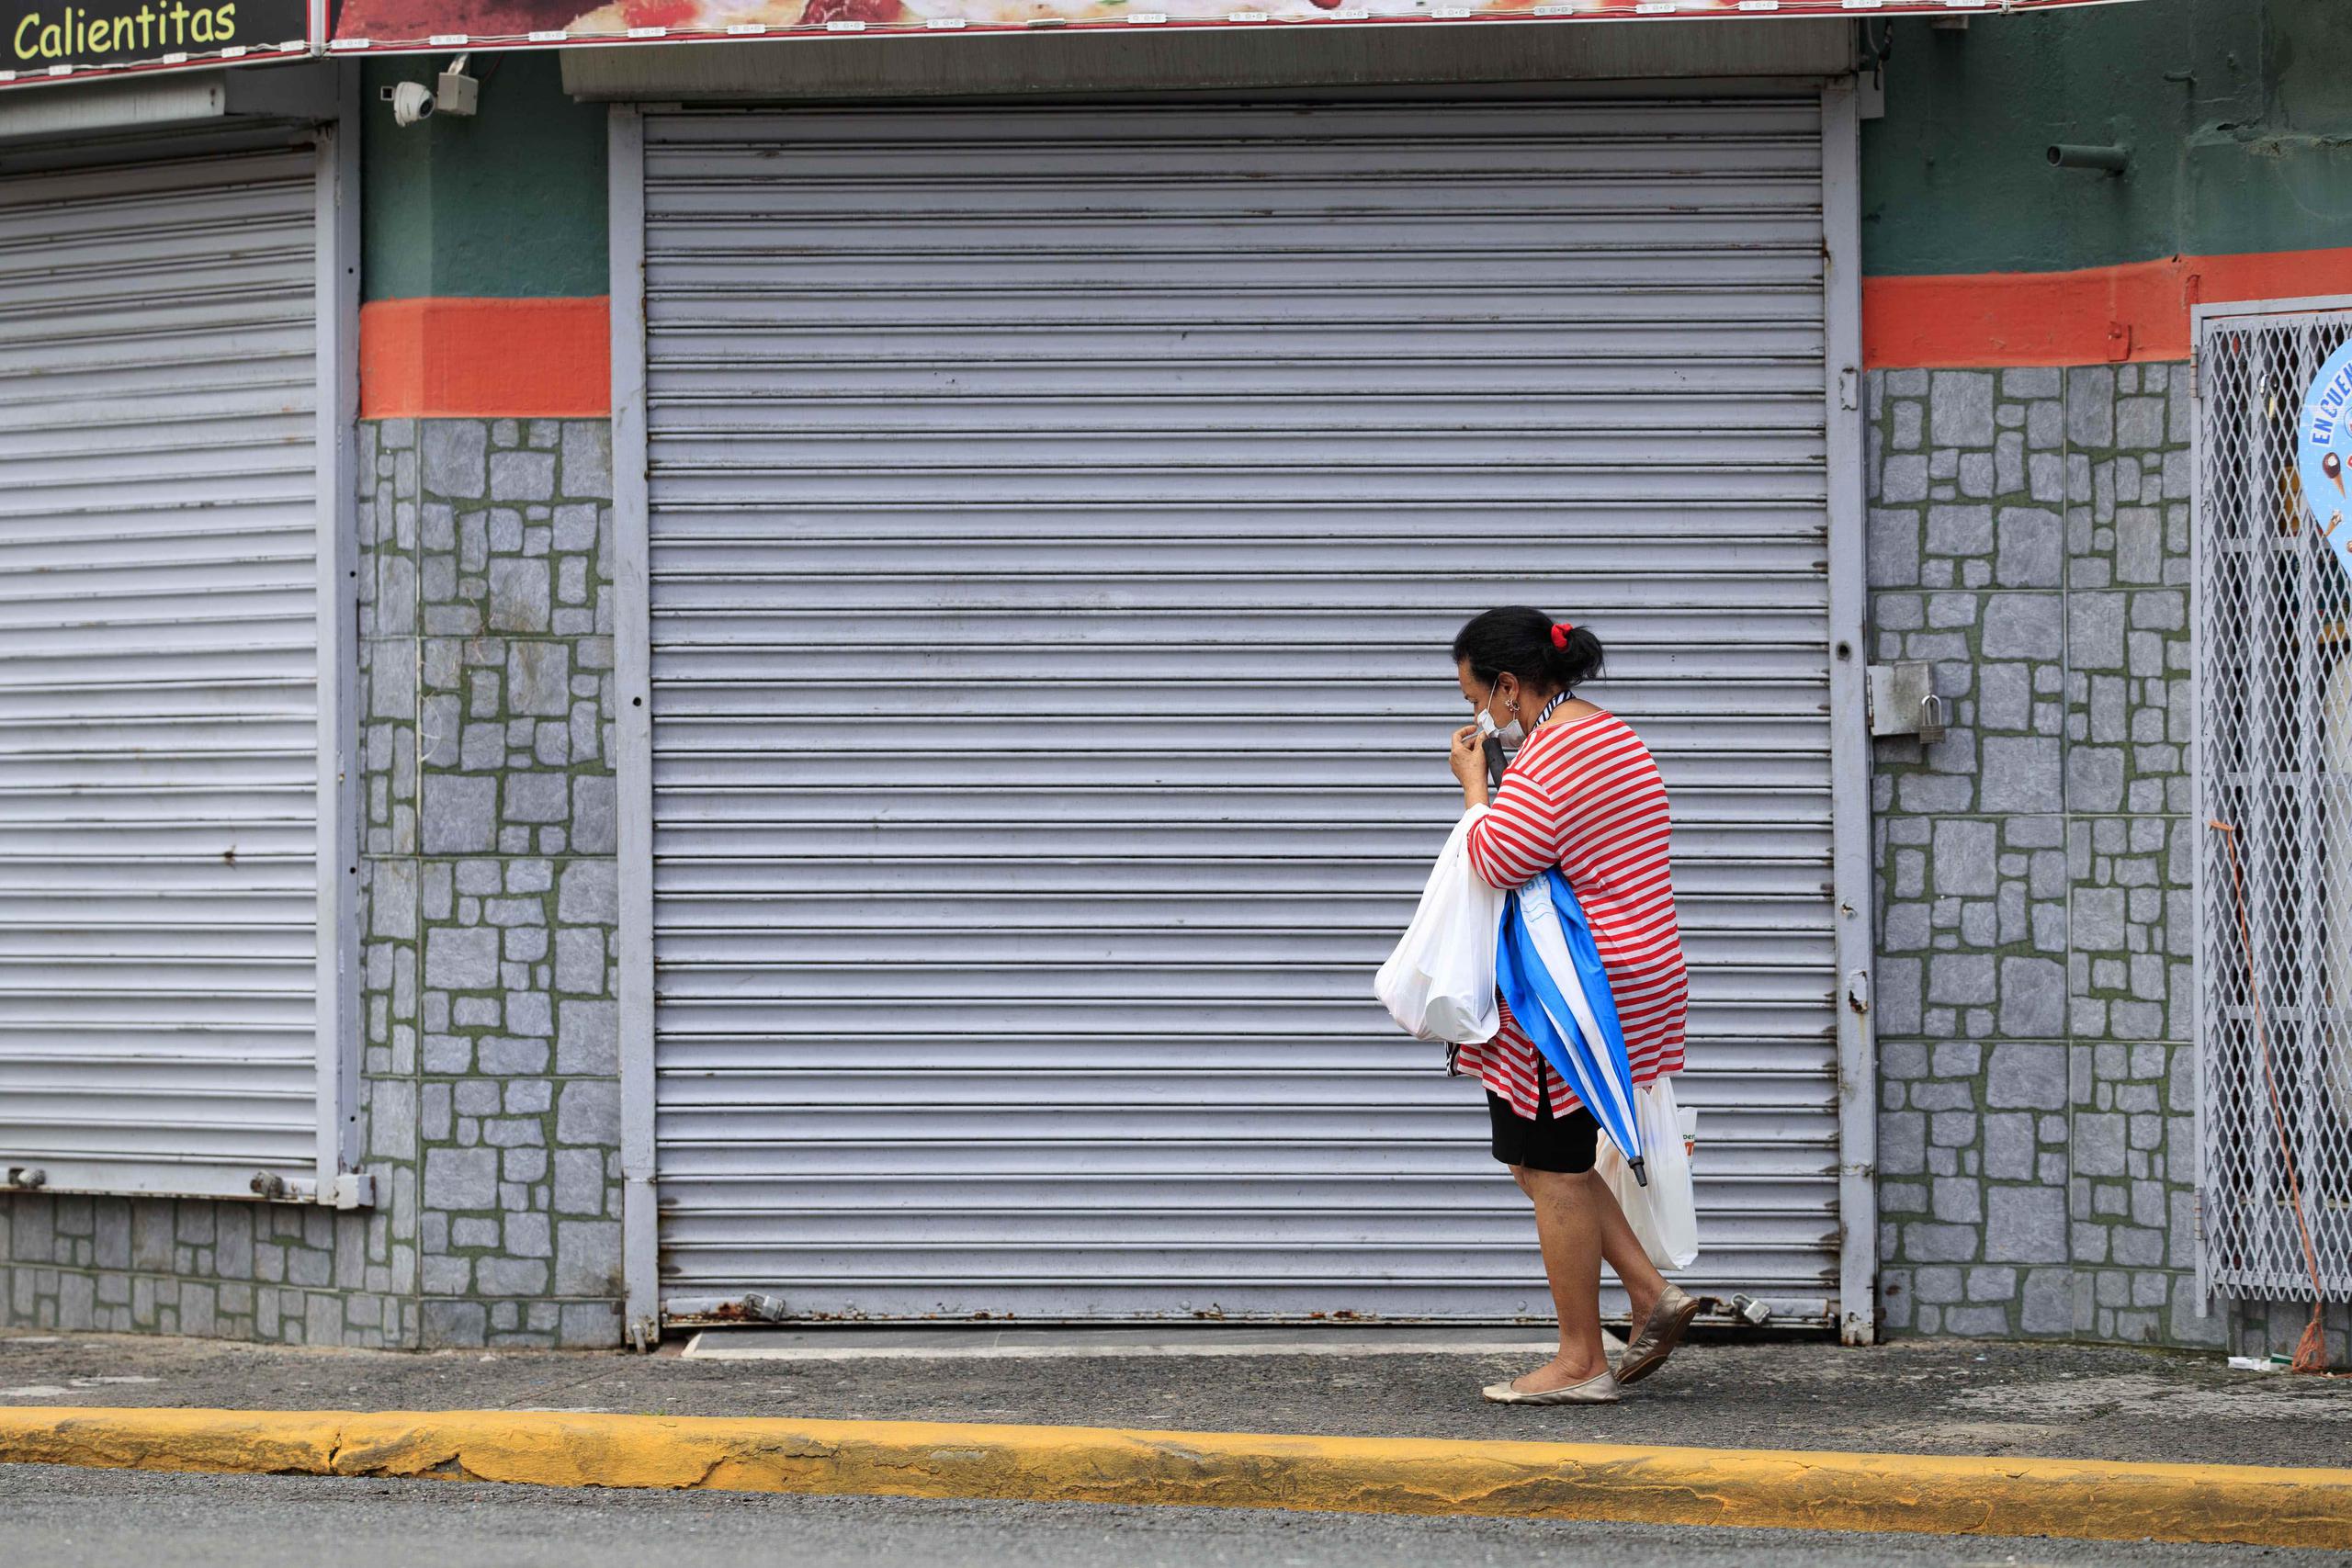 El cierre forzoso de negocios y otras medidas para atajar el avance del coronavirus contribuyeron al desplome del Índice de Actividad Económica. En la foto, una mujer camina frente a un comercio cerrado en el Viejo San Juan a causa de la pandemia.